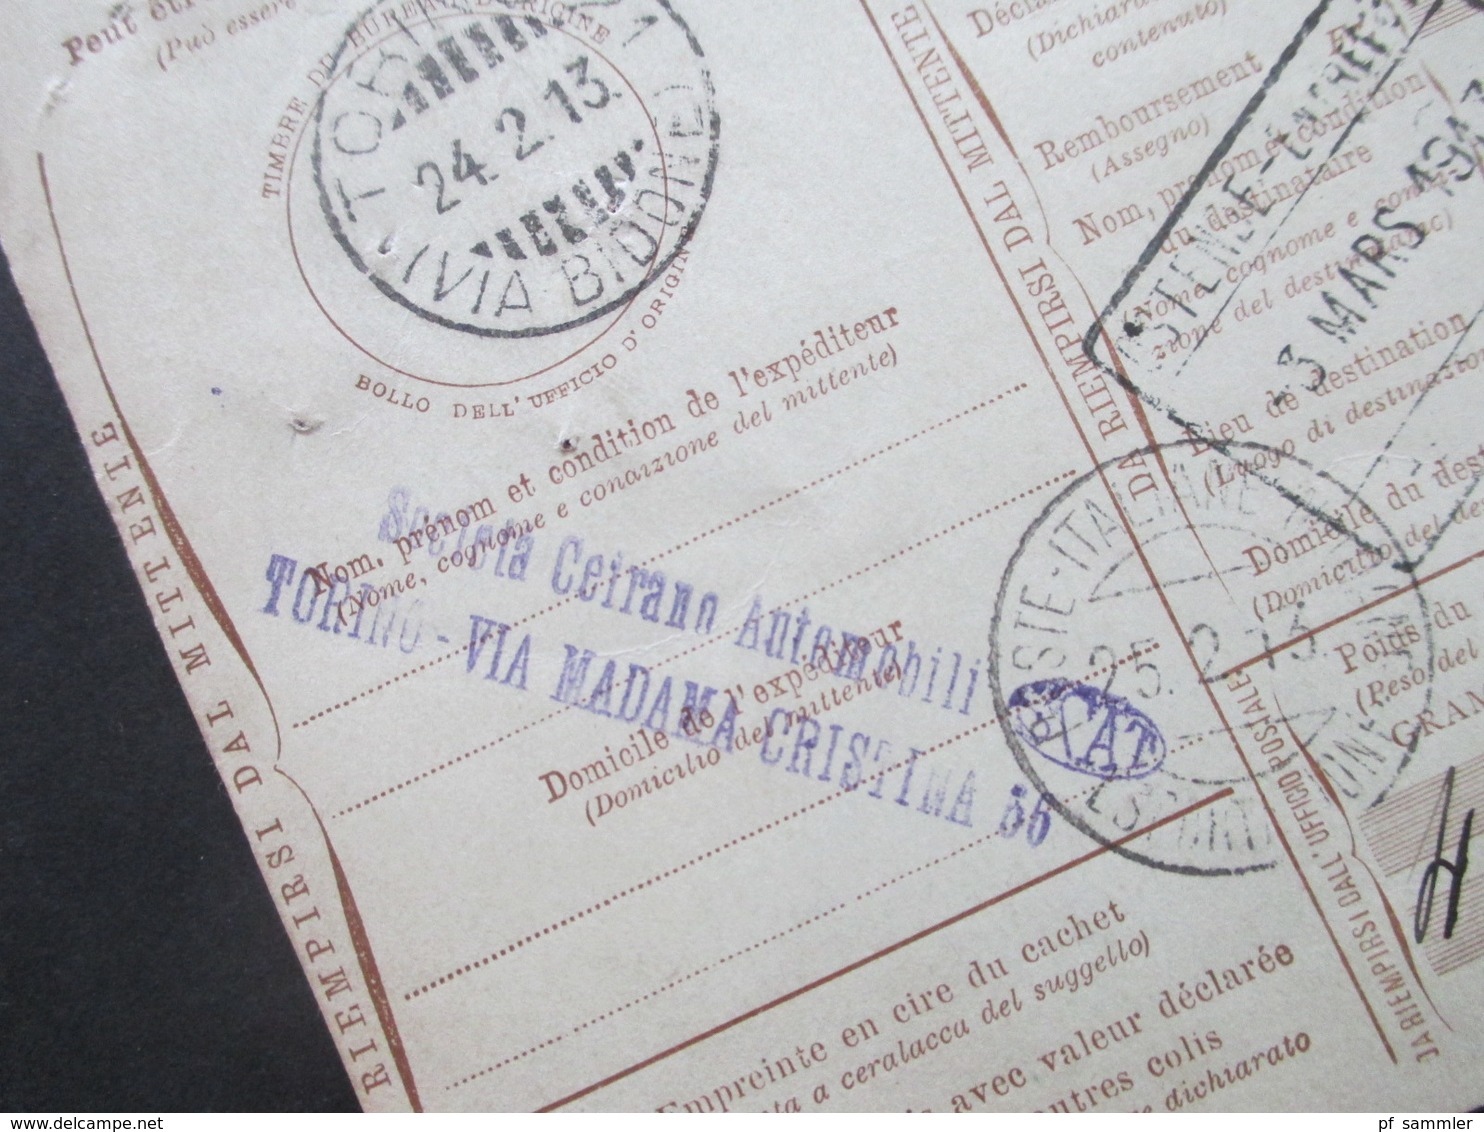 Italien 1913 Auslandspaketkarte Zusatzfrankaturen Und Vielen Stempeln Torino - Ostende Klebezettel Assegno Remboursement - Pacchi Postali